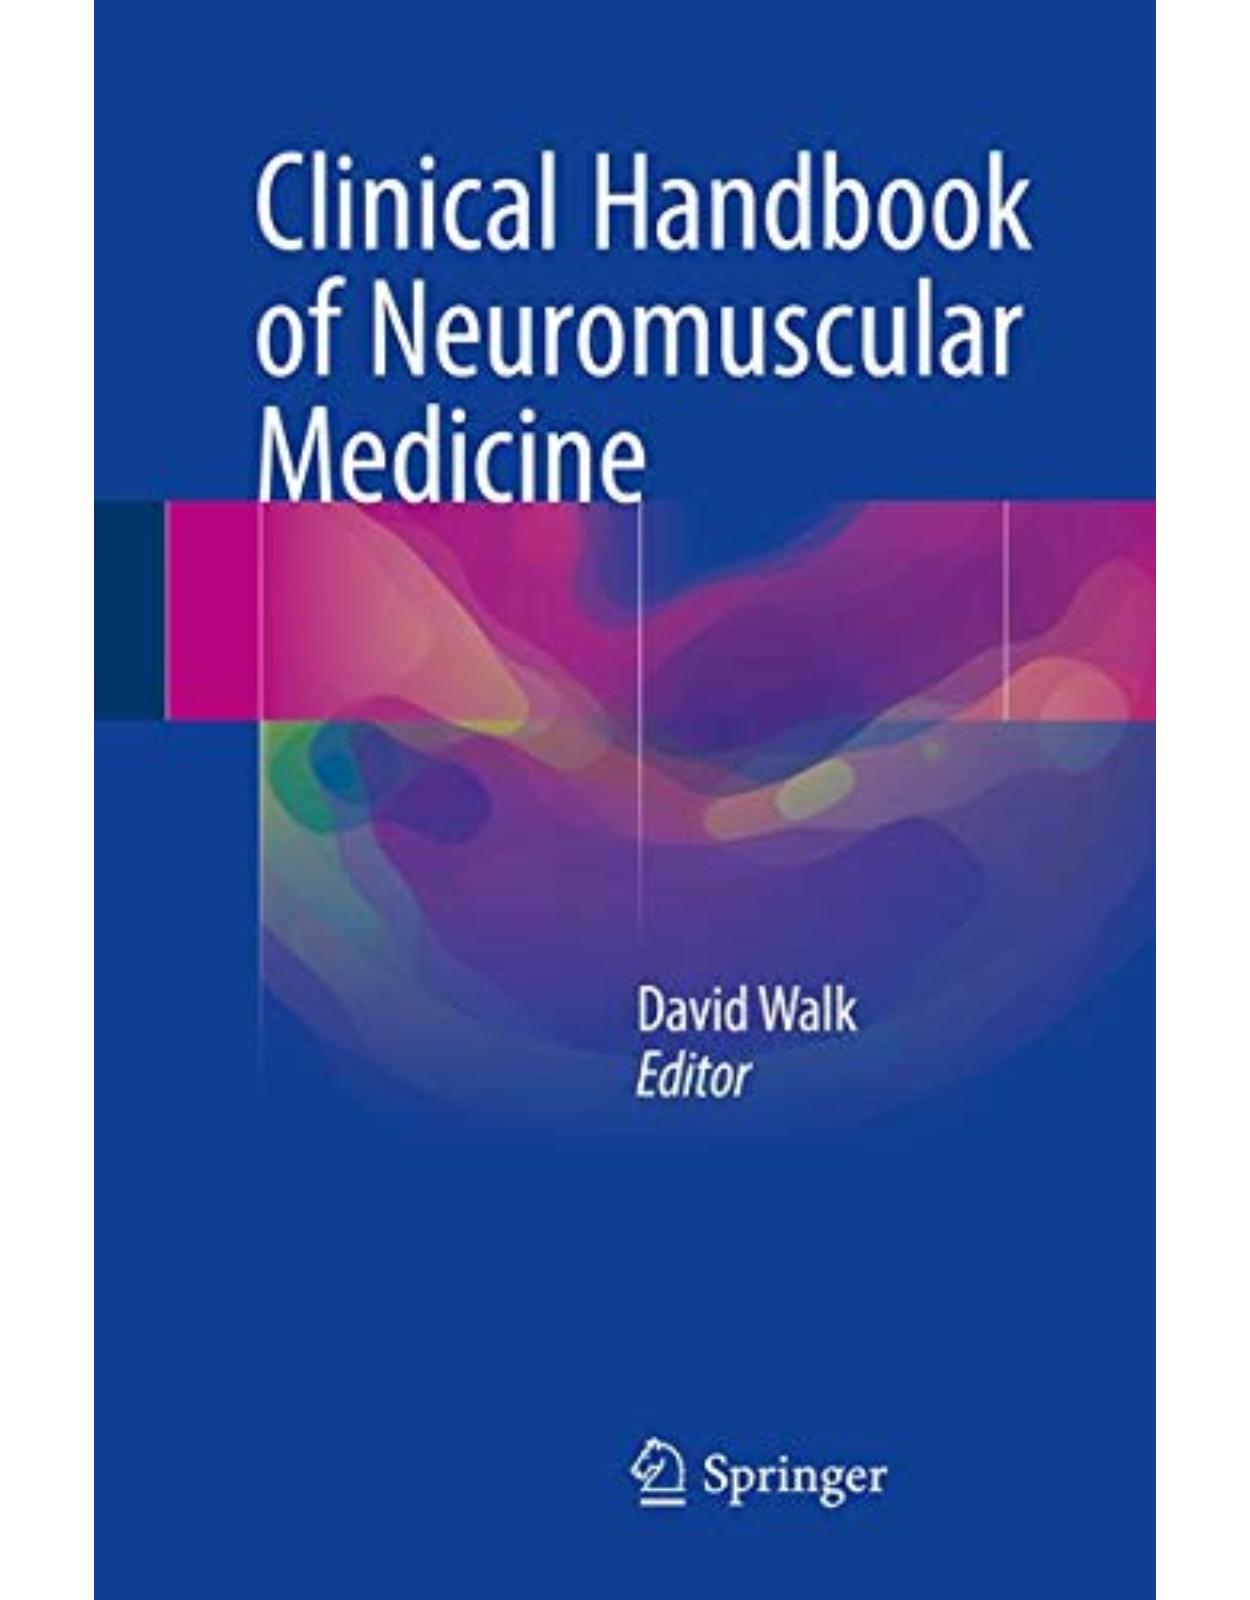 Clinical Handbook of Neuromuscular Medicine